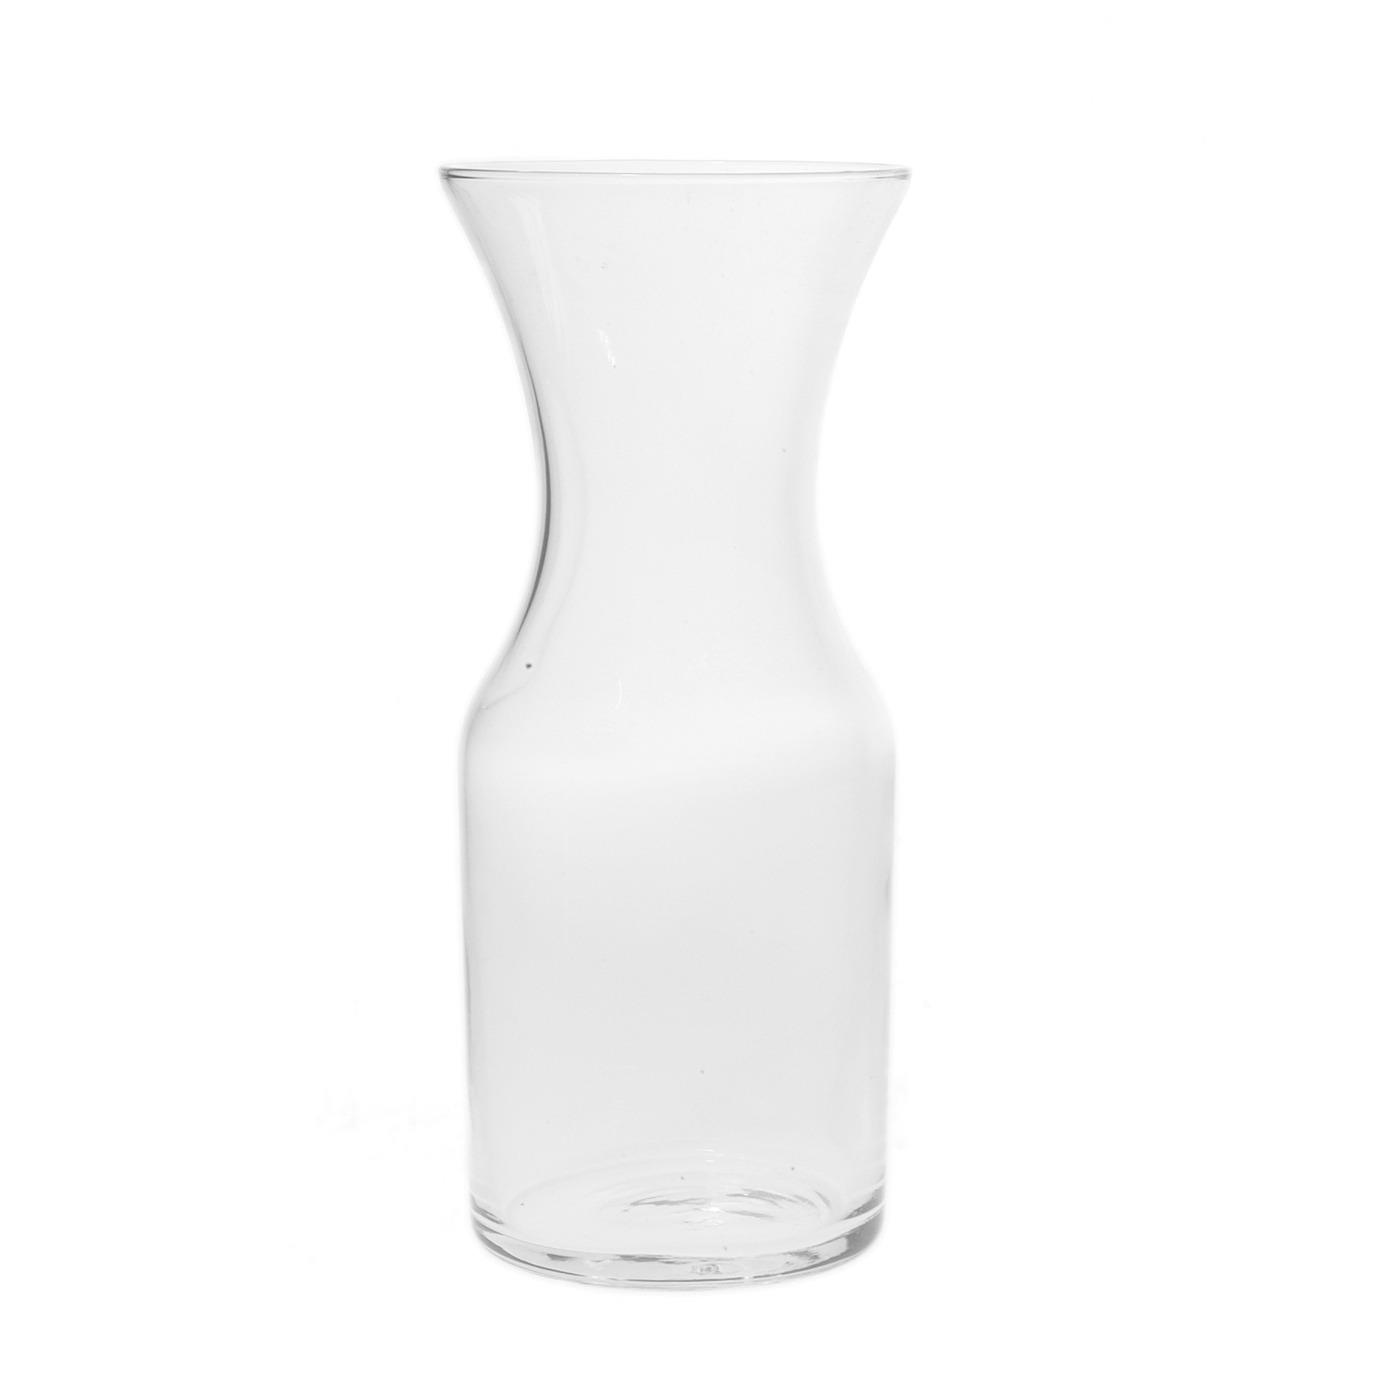 Glass Wine Carafe - 0.5 Liter